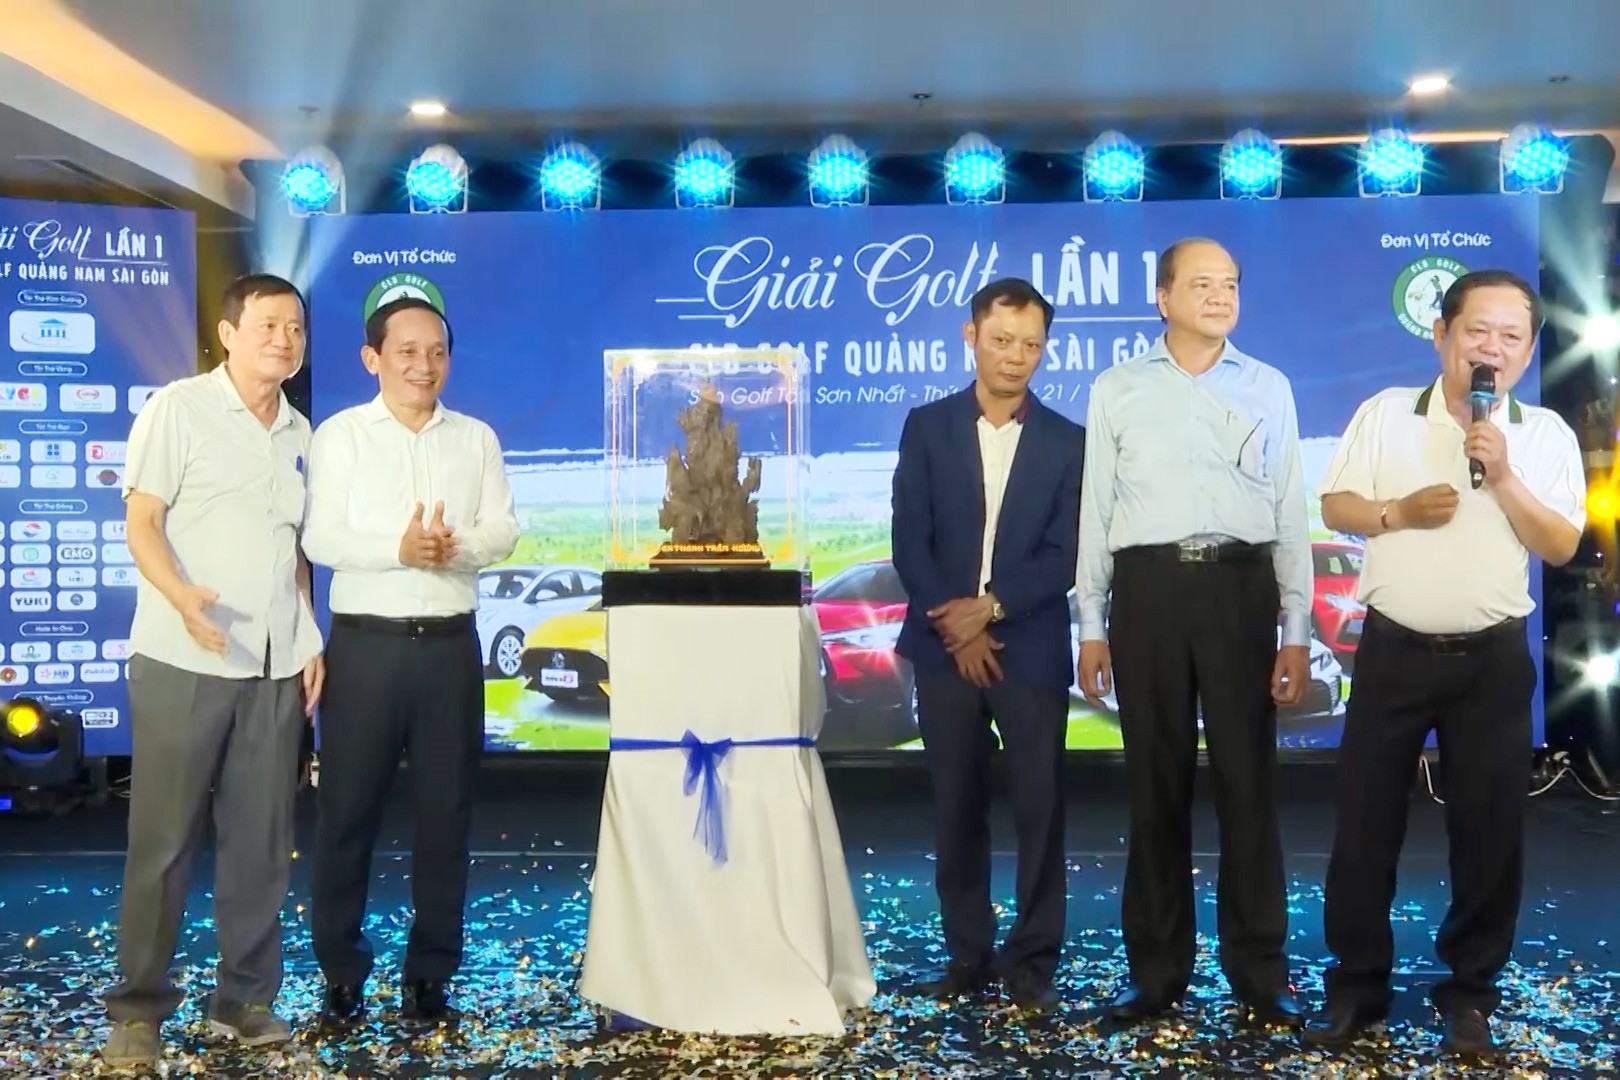 Chương trình đấu giá vật phẩm trầm hương gây quỹ ươm mầm của Giải Golf CLB Golf Quảng Nam Sài Gòn. Ảnh: PHAN VINH